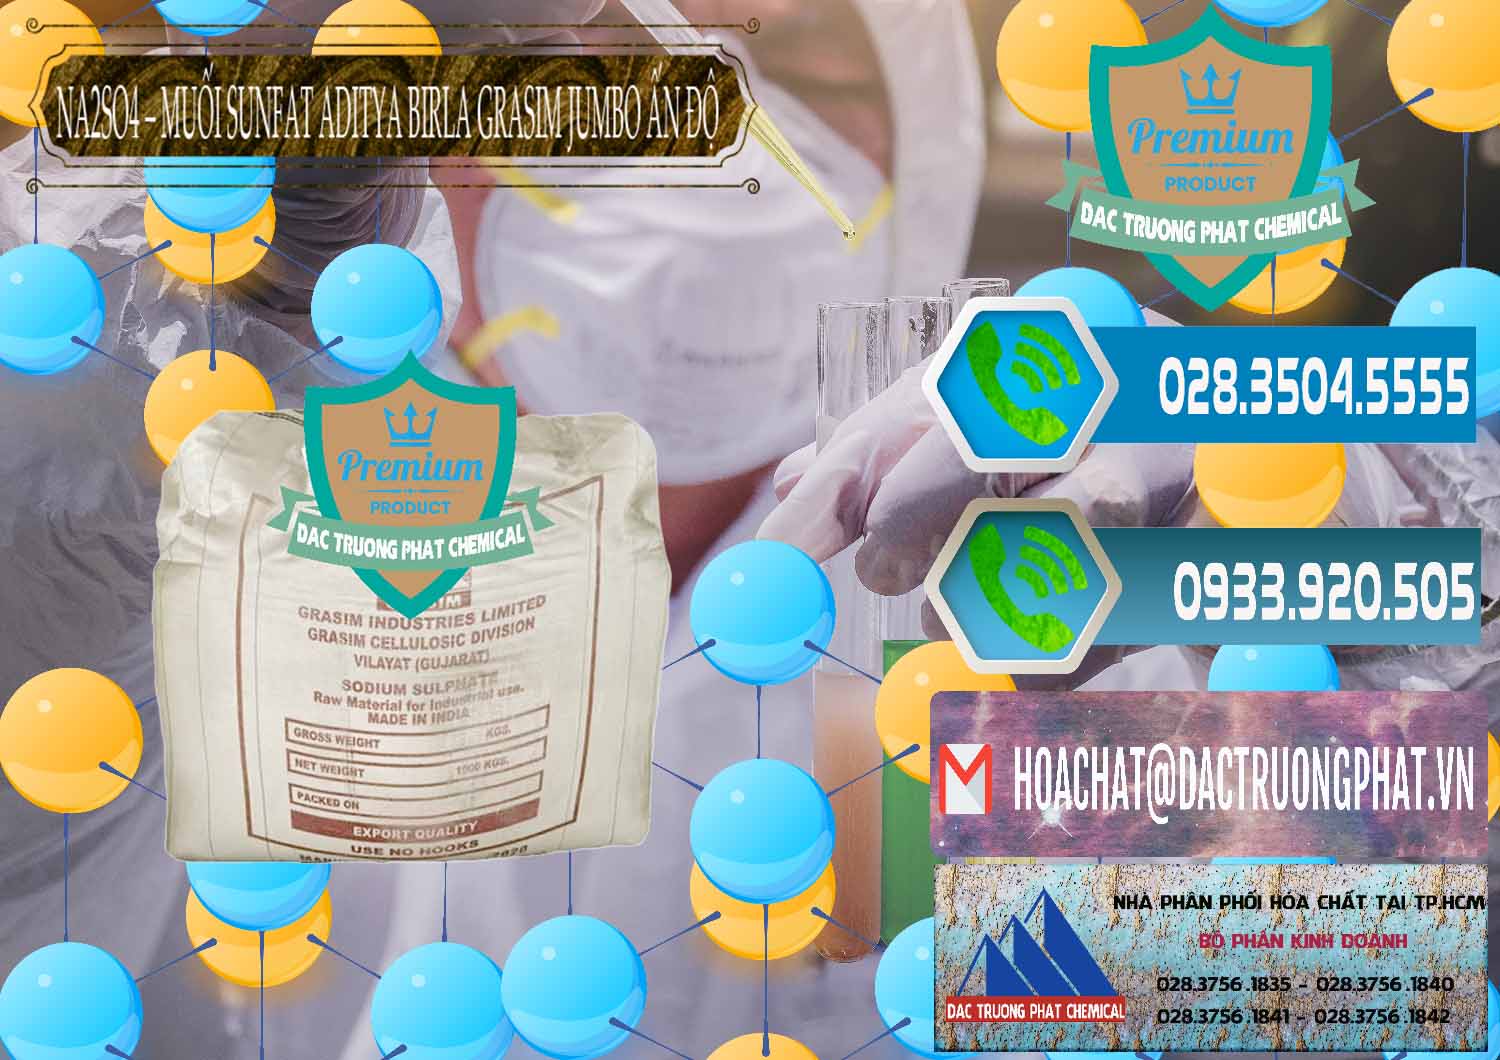 Nhà cung ứng - bán Sodium Sulphate - Muối Sunfat Na2SO4 Jumbo Bành Aditya Birla Grasim Ấn Độ India - 0357 - Đơn vị cung cấp - phân phối hóa chất tại TP.HCM - congtyhoachat.net